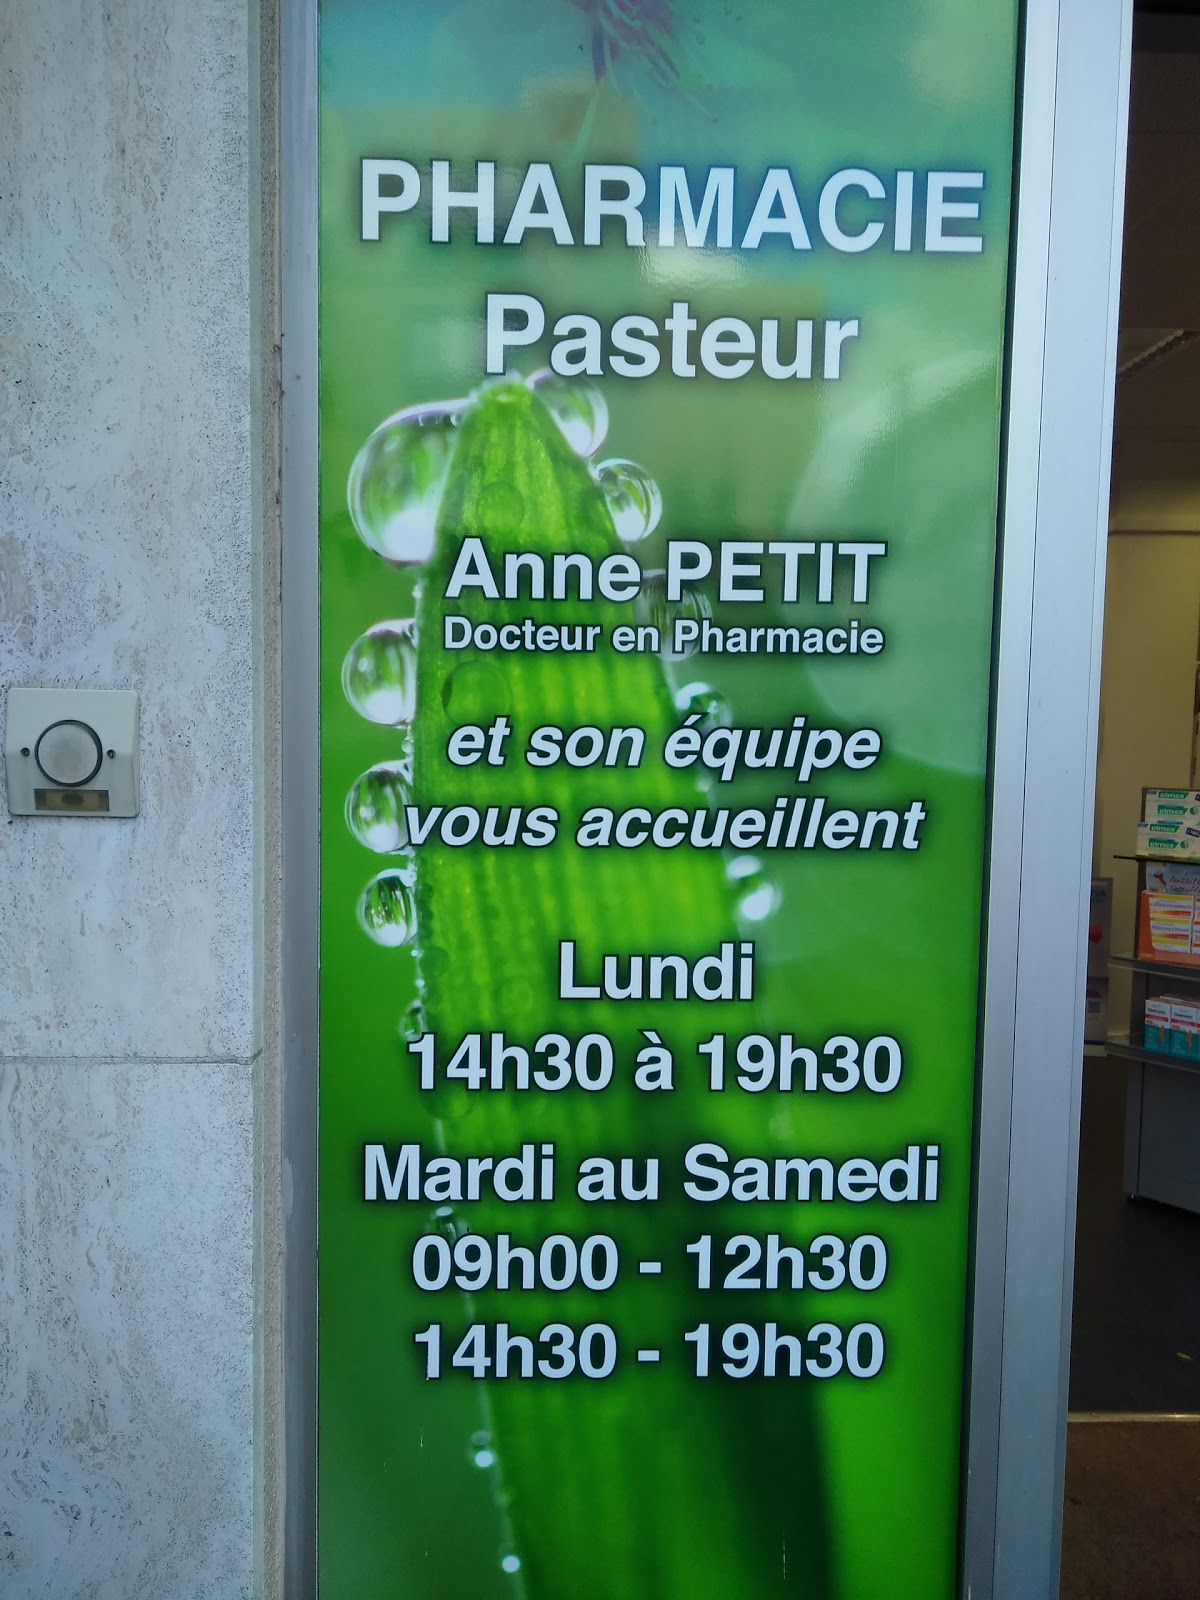 Selarl Pharmacie Pasteur